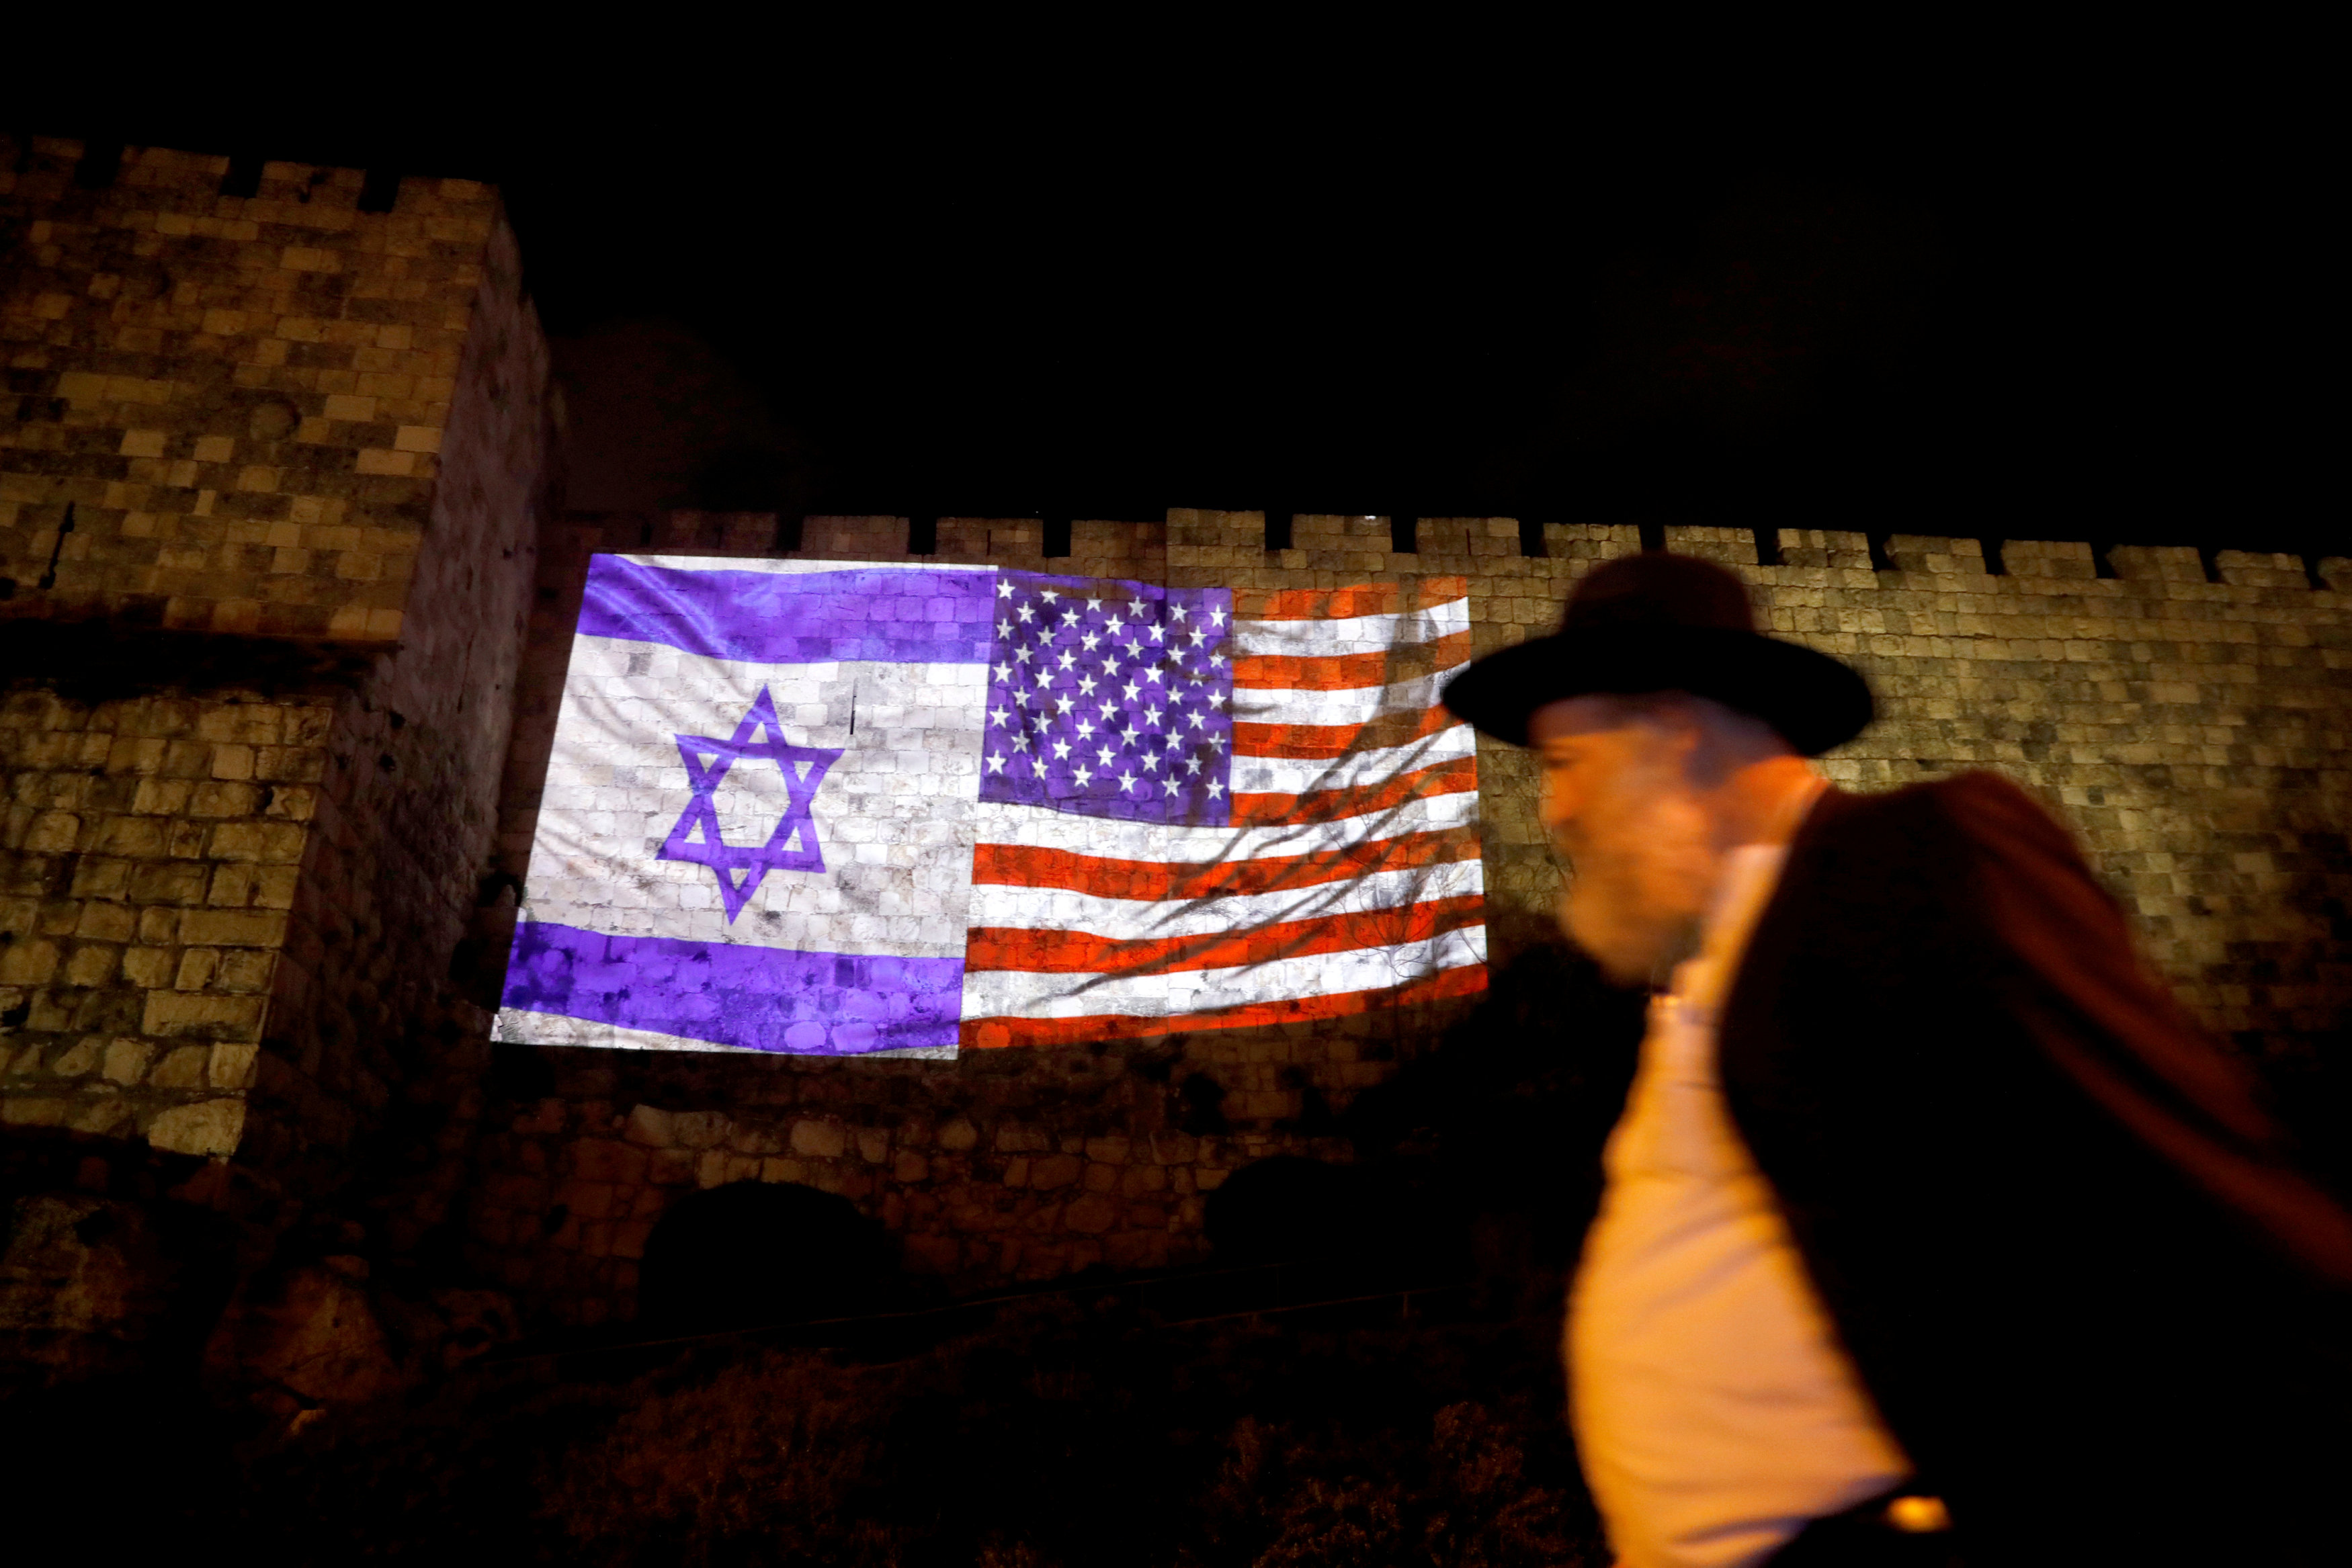 Banderas de Israel y EU aparecen en muralla de Ciudad Vieja de Jerusalén